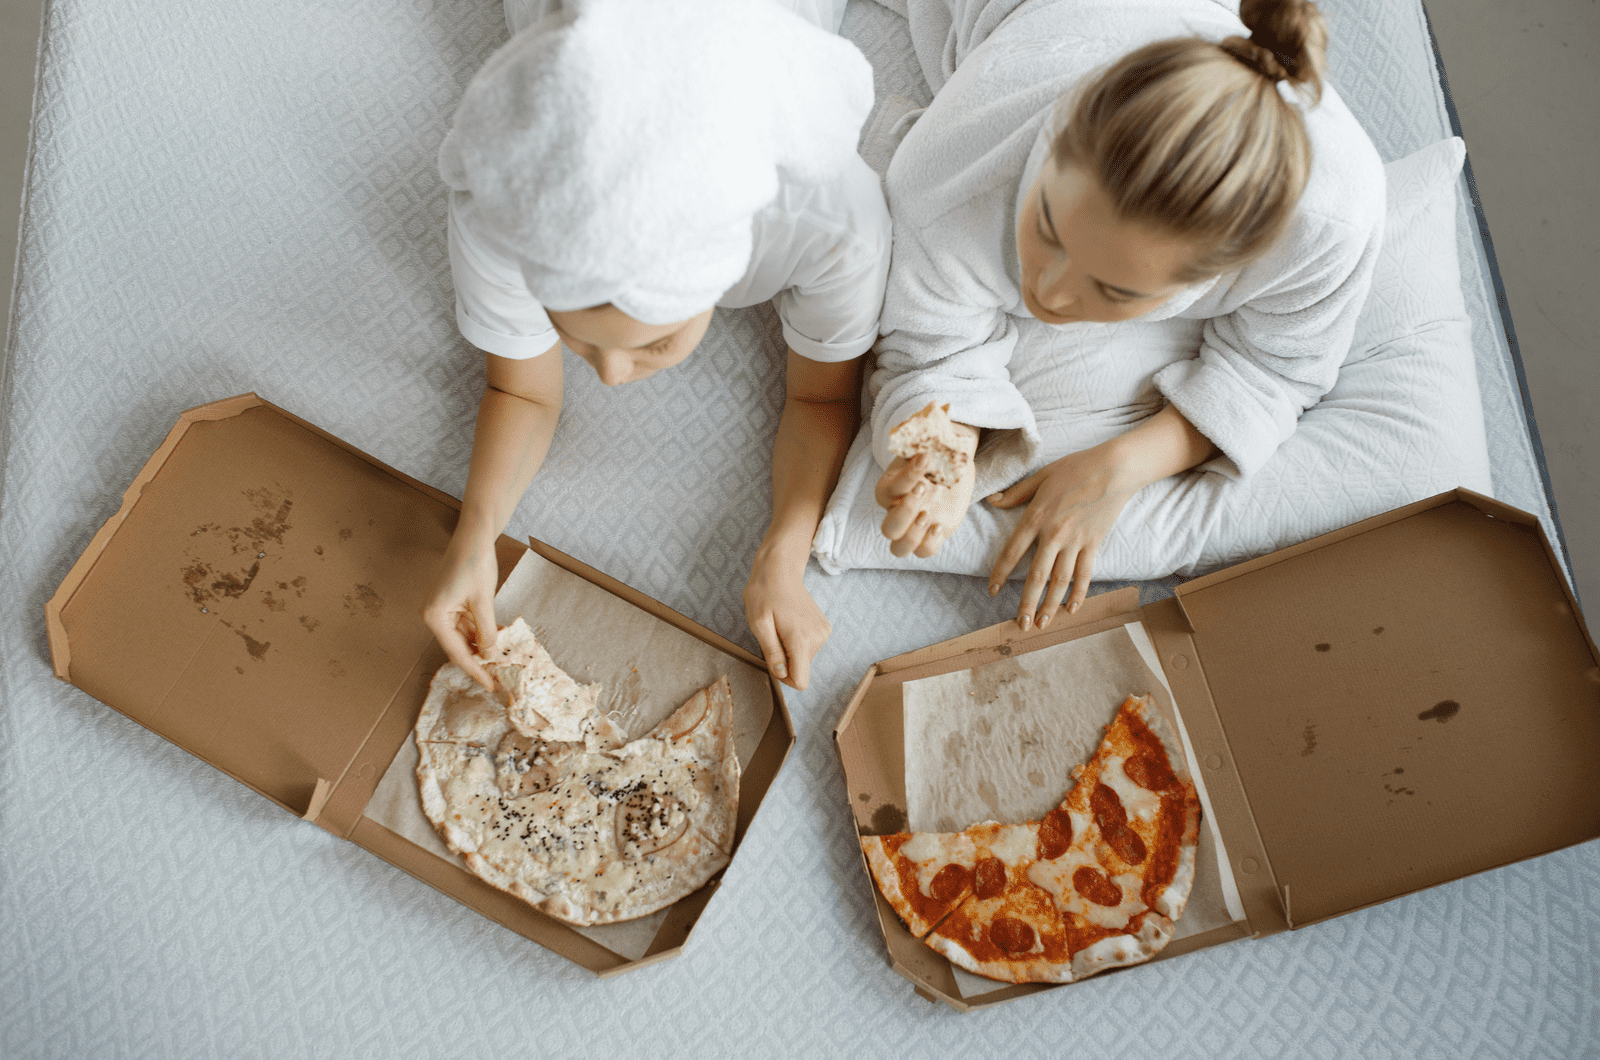 due ragazze in accappatoio si sdraiano sul letto mangiando pizza e guardando la TV